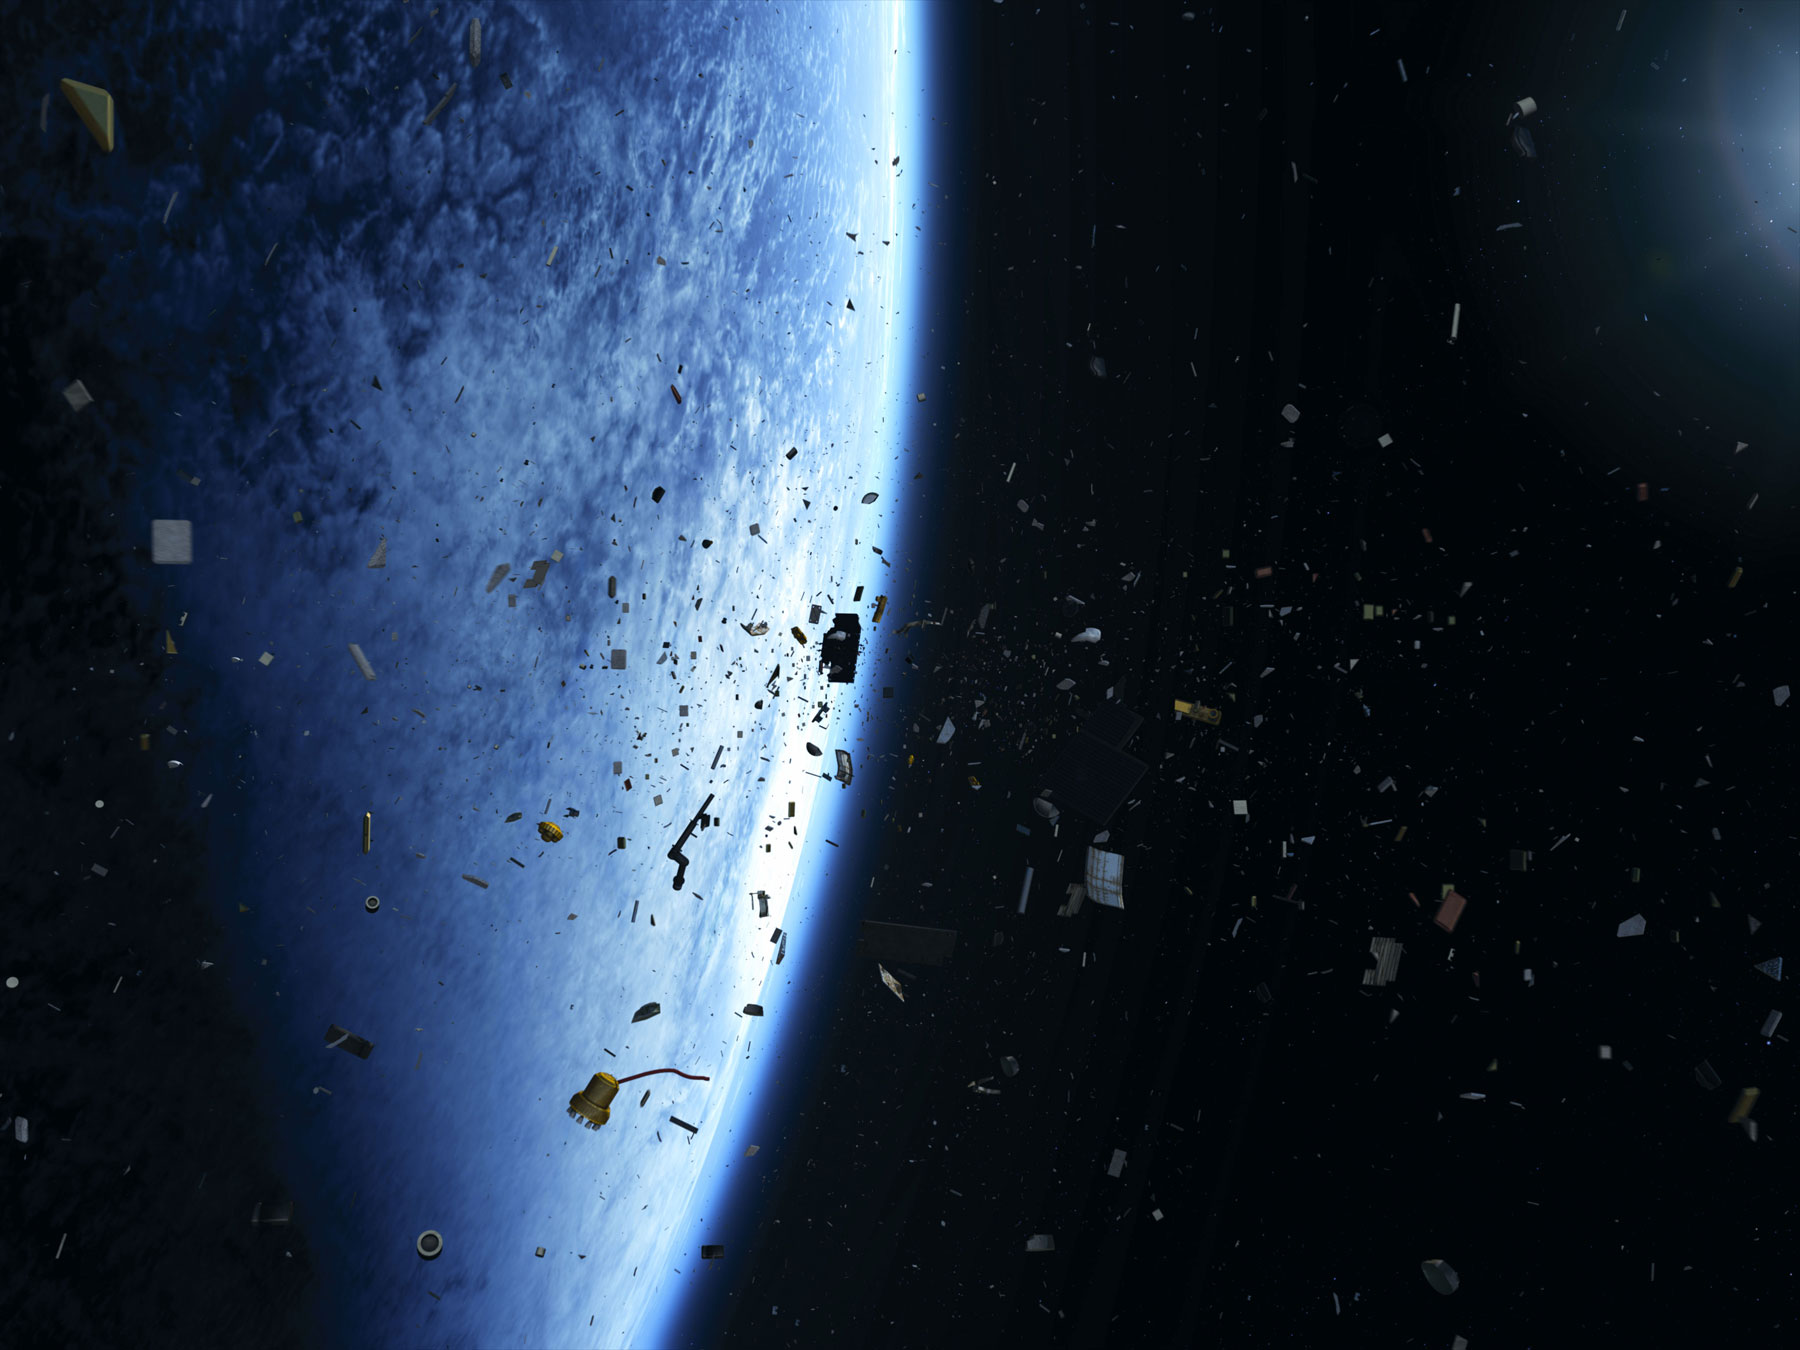 Quelle que soit leur taille, les débris spatiaux sont une gêne très significative et même une menace pour les activités dans l'espace. © Esa